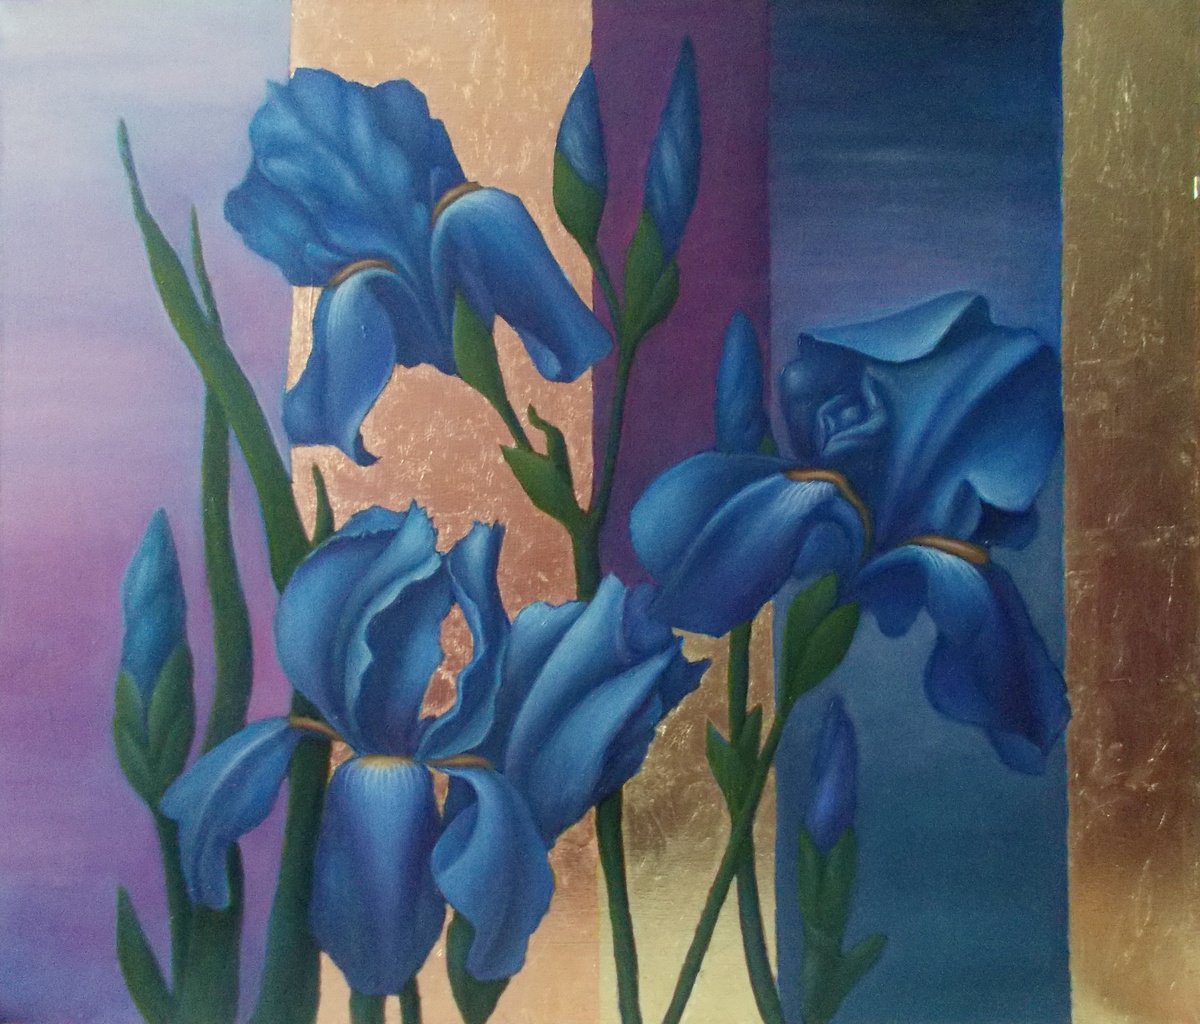 Ultramarine irises by Tatyana Mironova